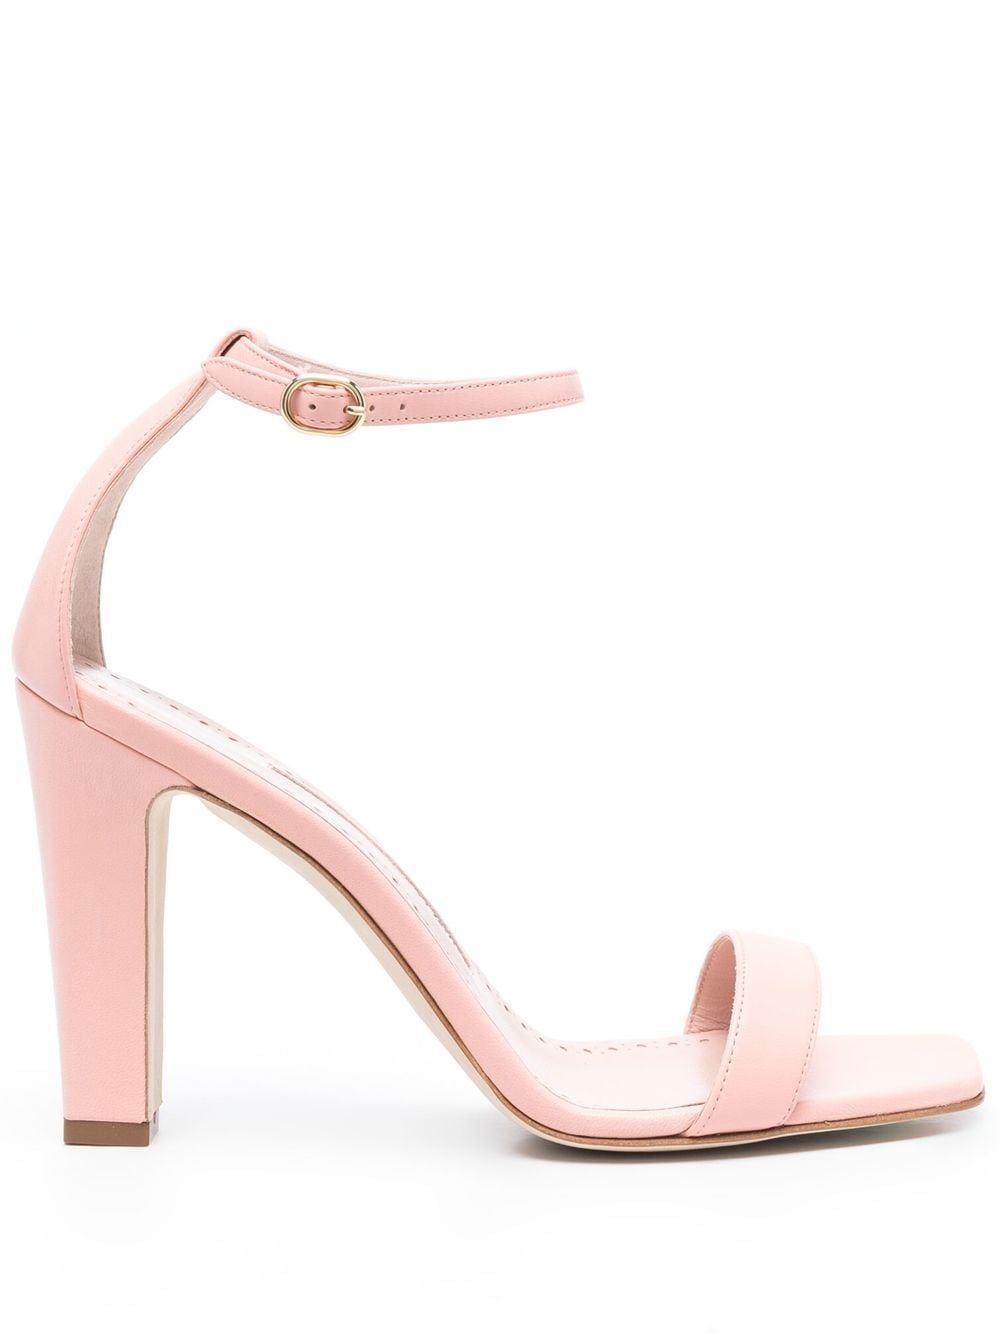 Shop Manolo Blahnik Ressata 100mm Leather Sandals In Pink